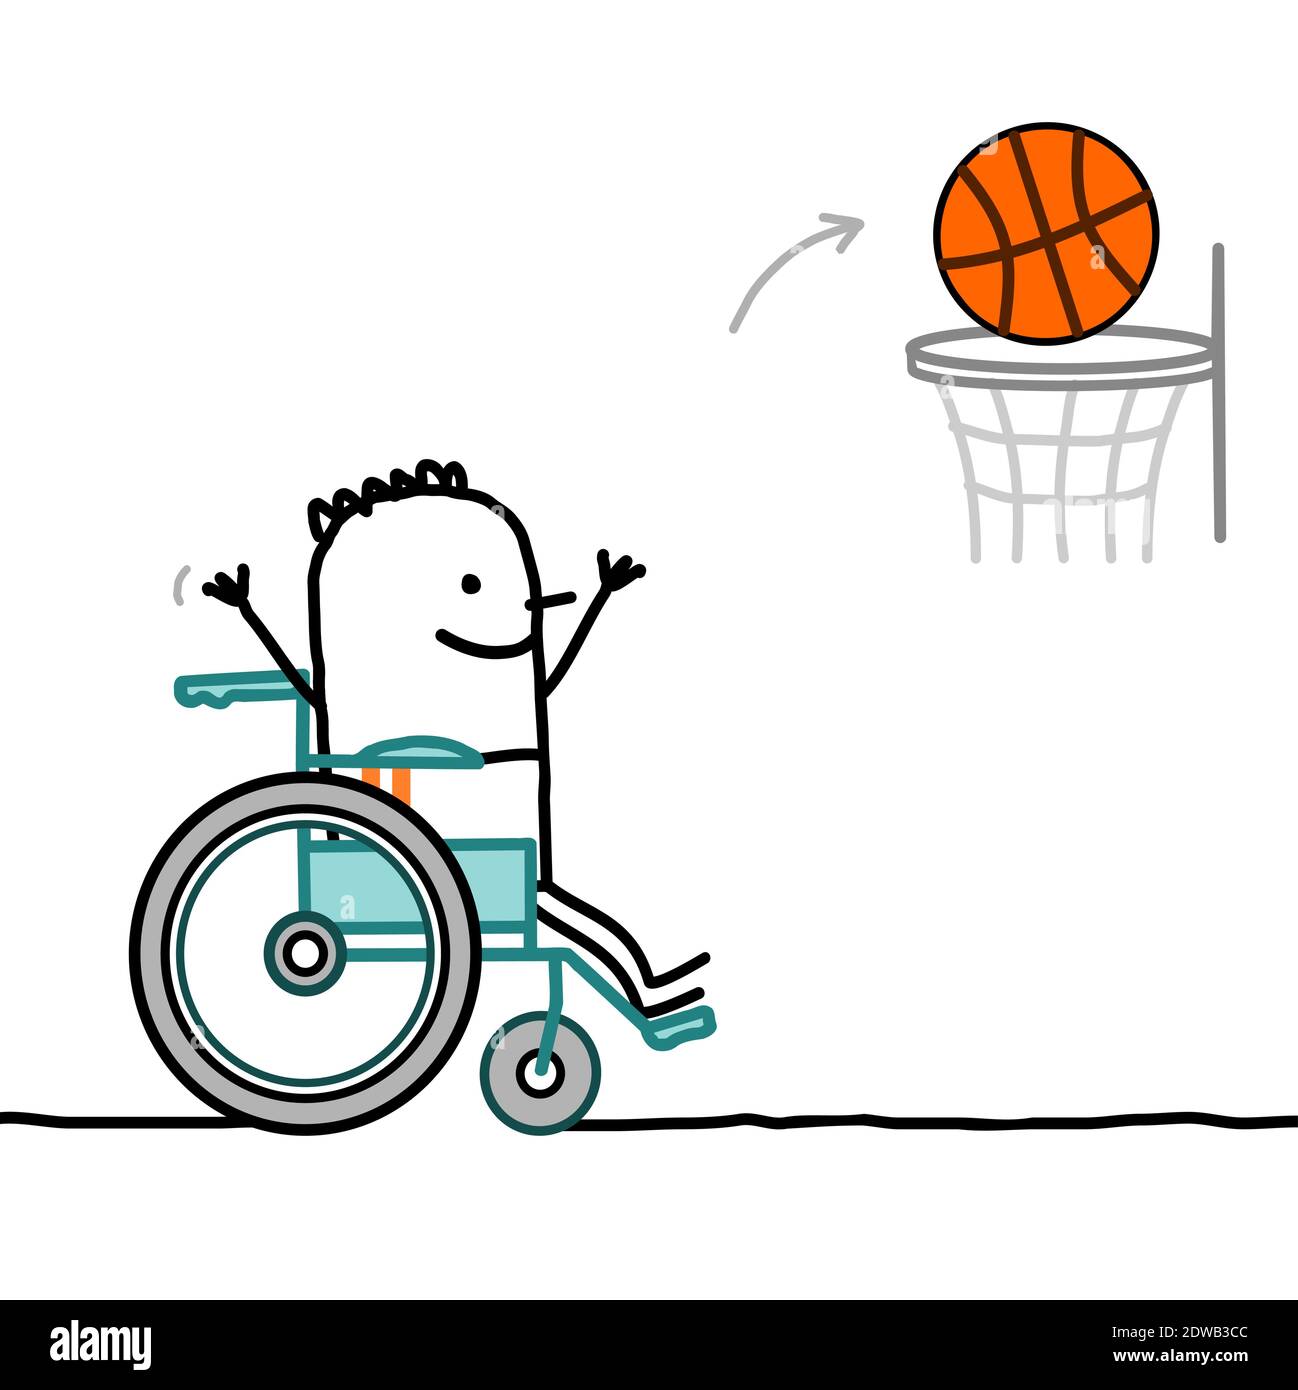 Dessin à la main dessin d'un garçon handicapé dans un fauteuil roulant jouant basket-ball Illustration de Vecteur